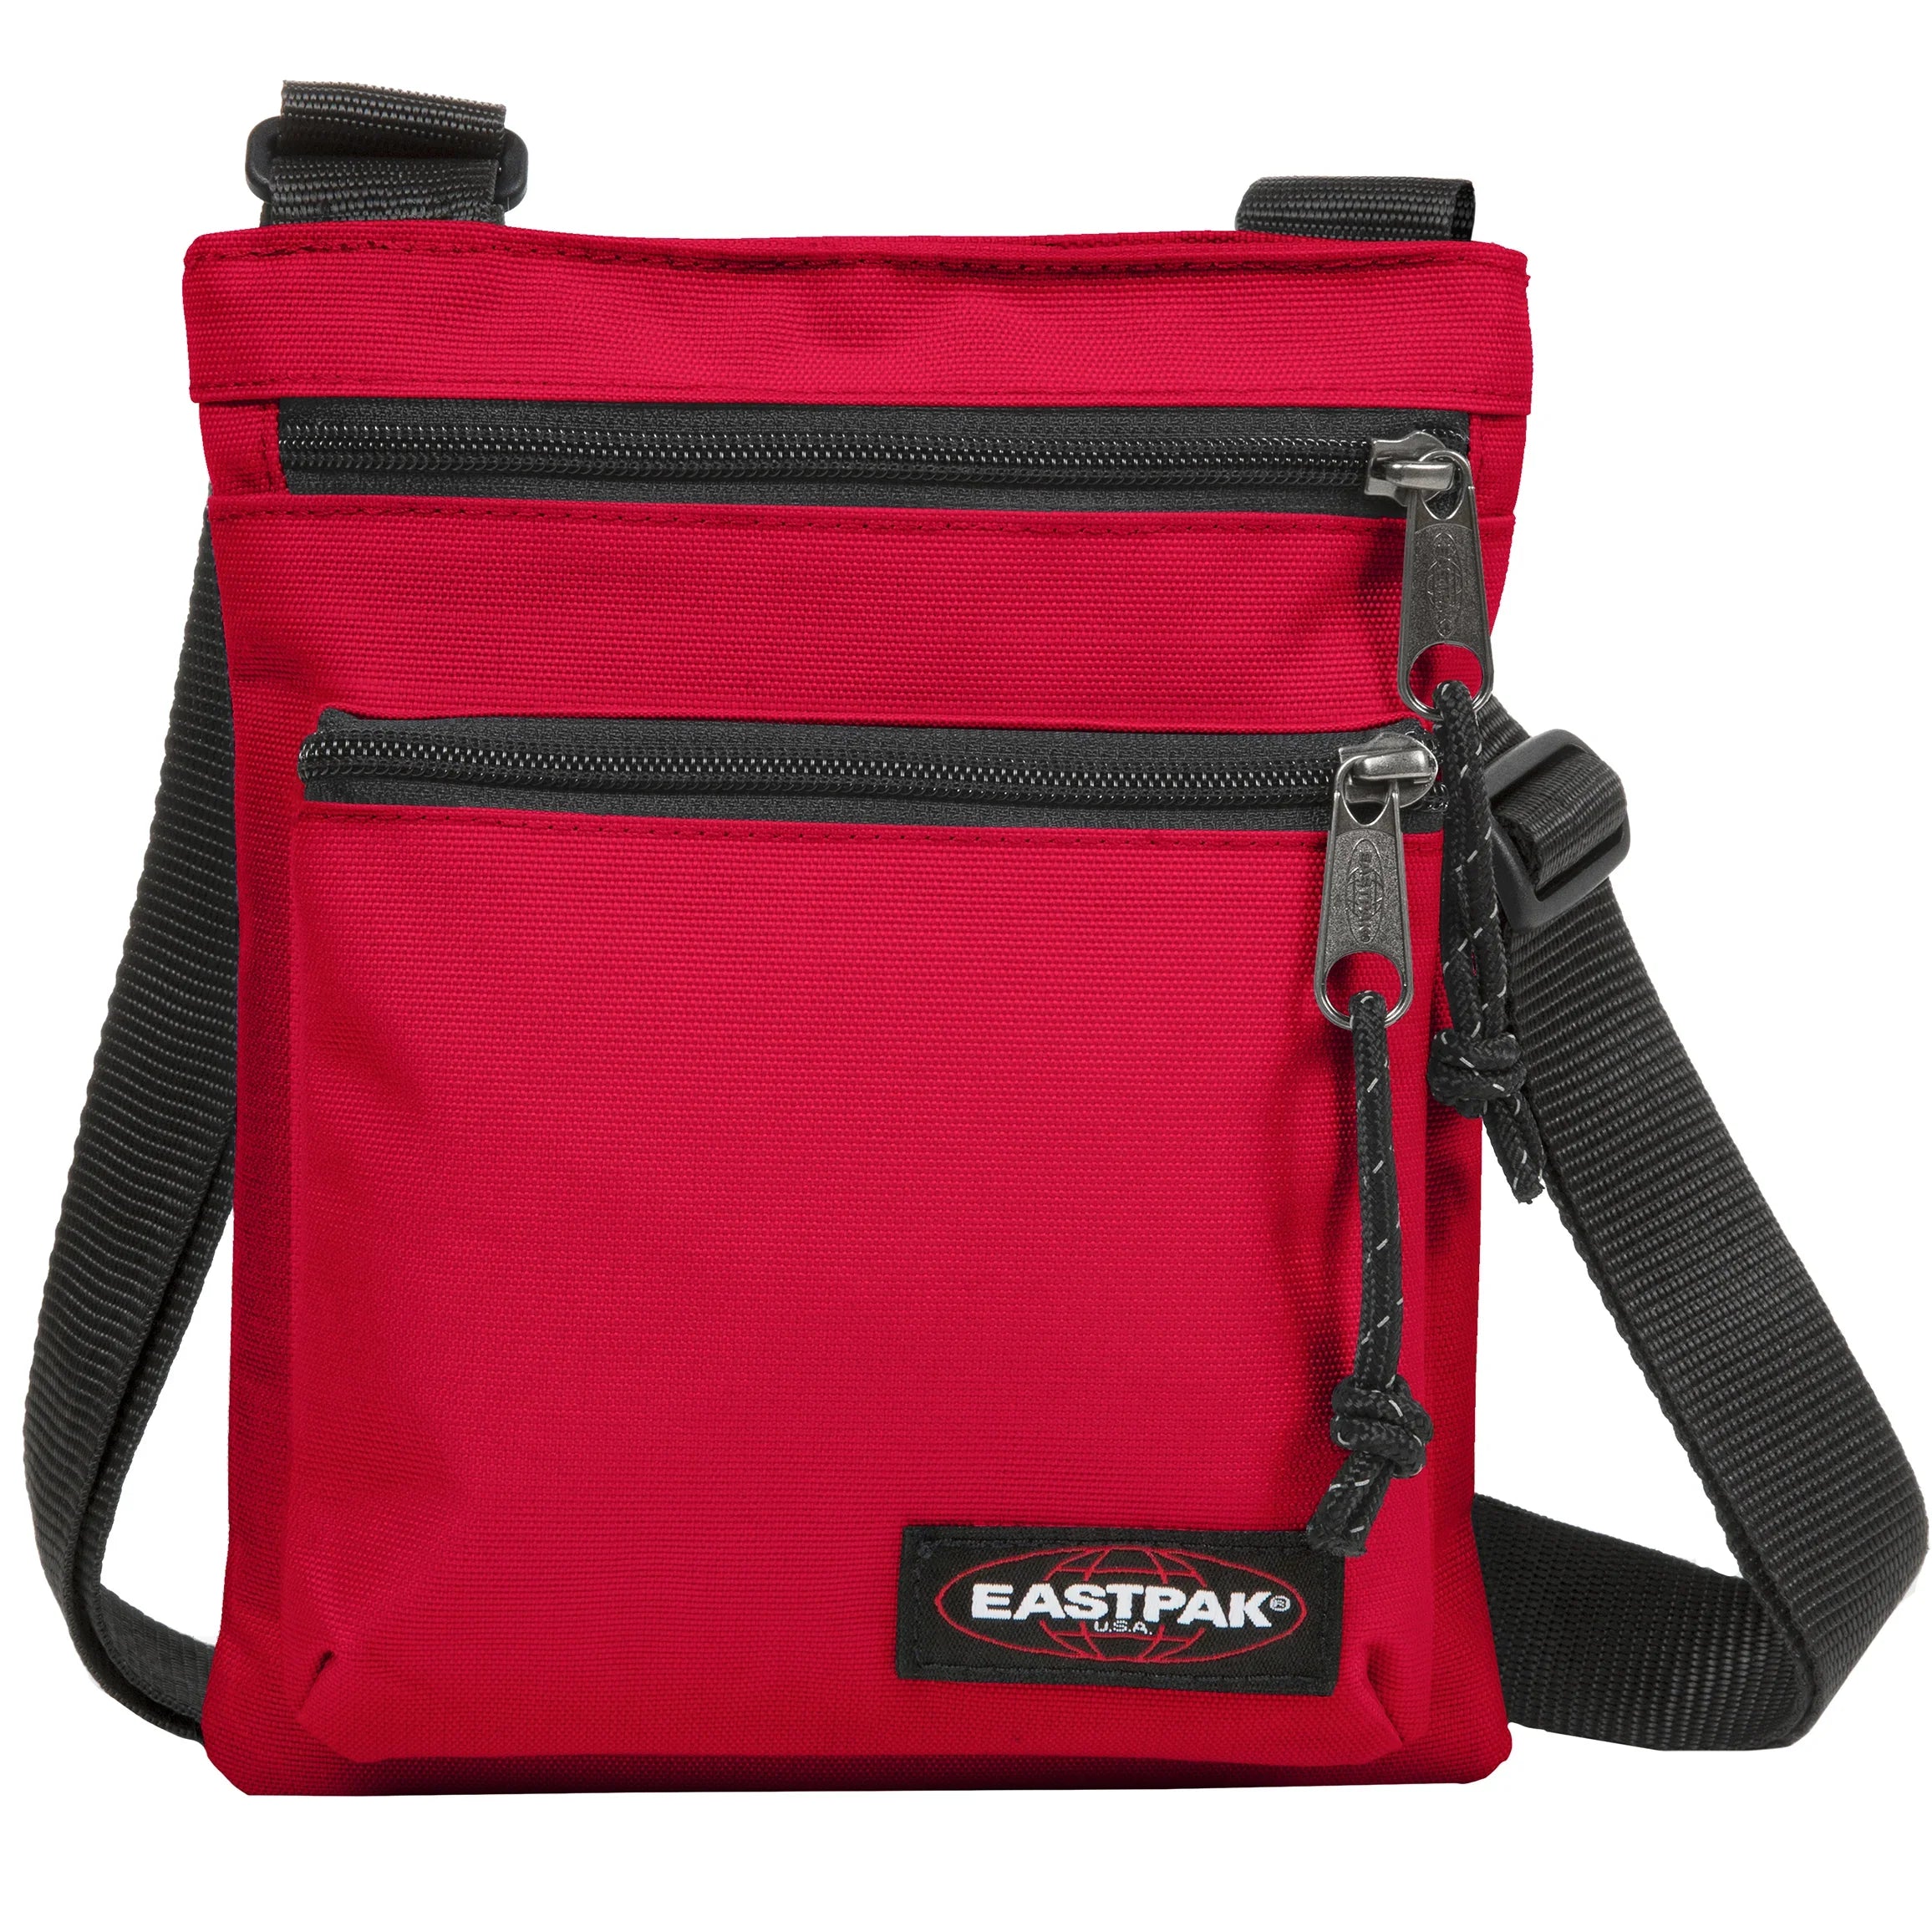 Eastpak Authentic Rusher Shoulder Bag 23 cm - Sailor Red